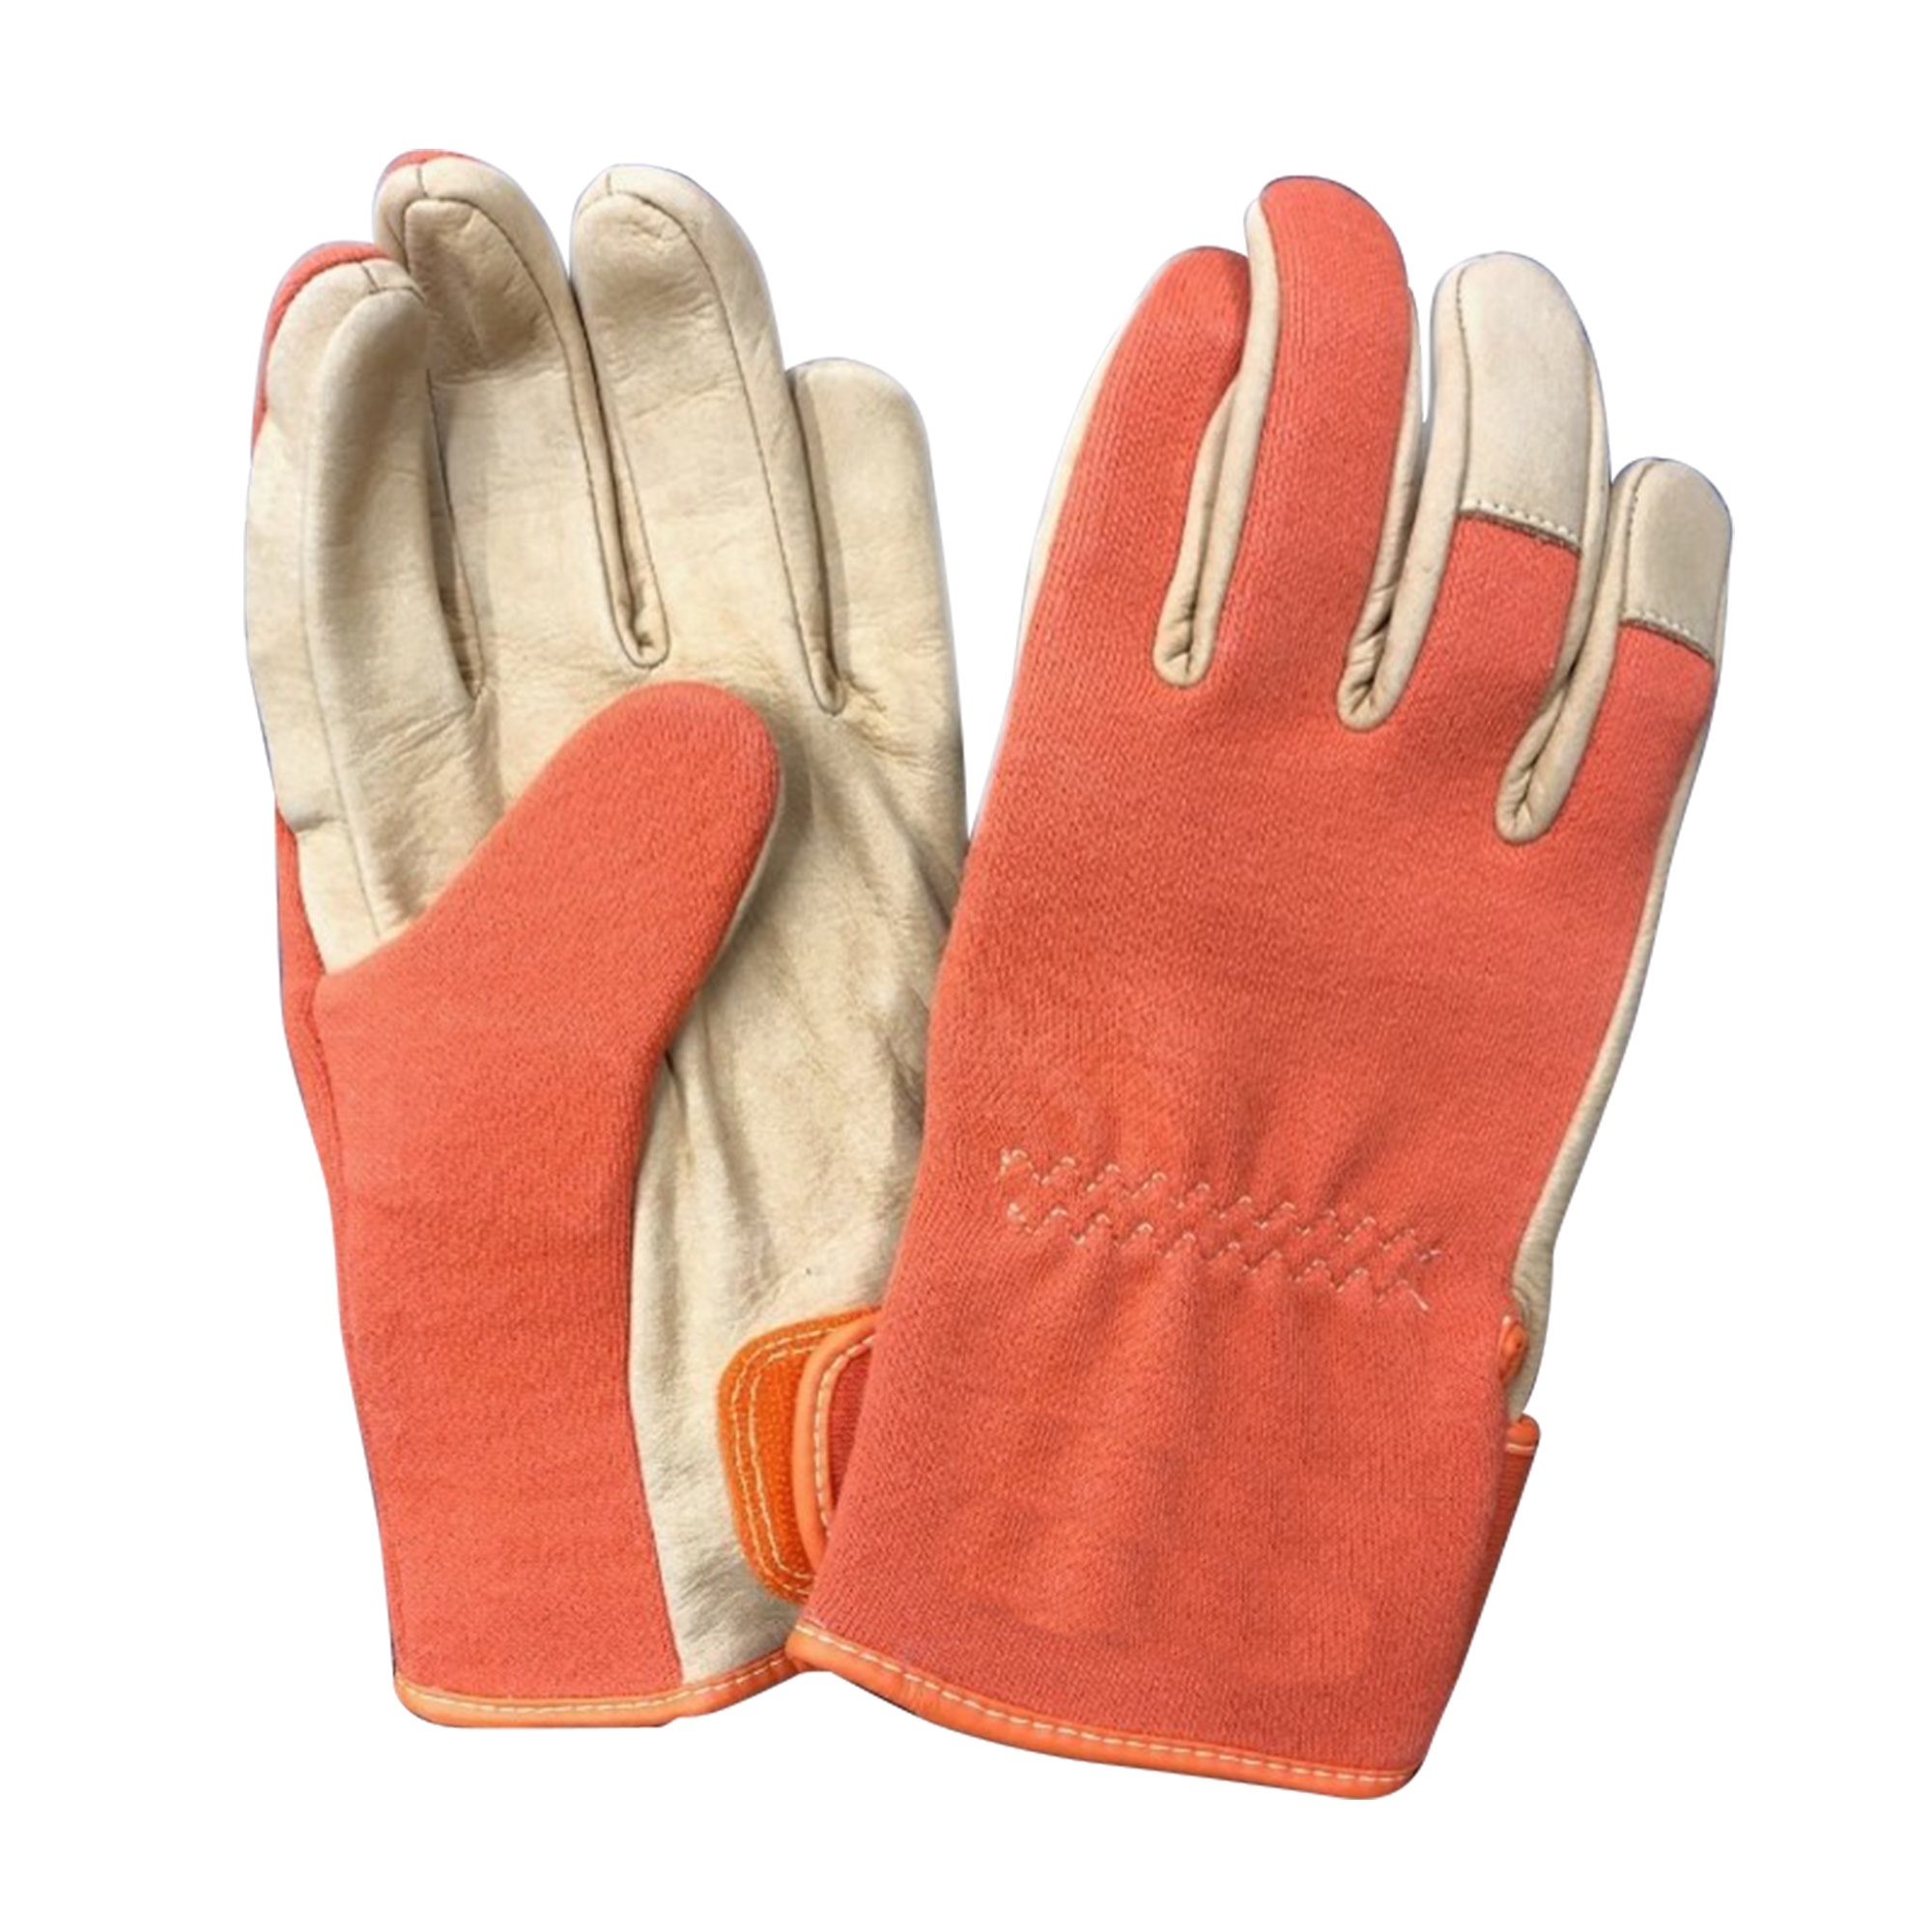 Laser Safety Gloves